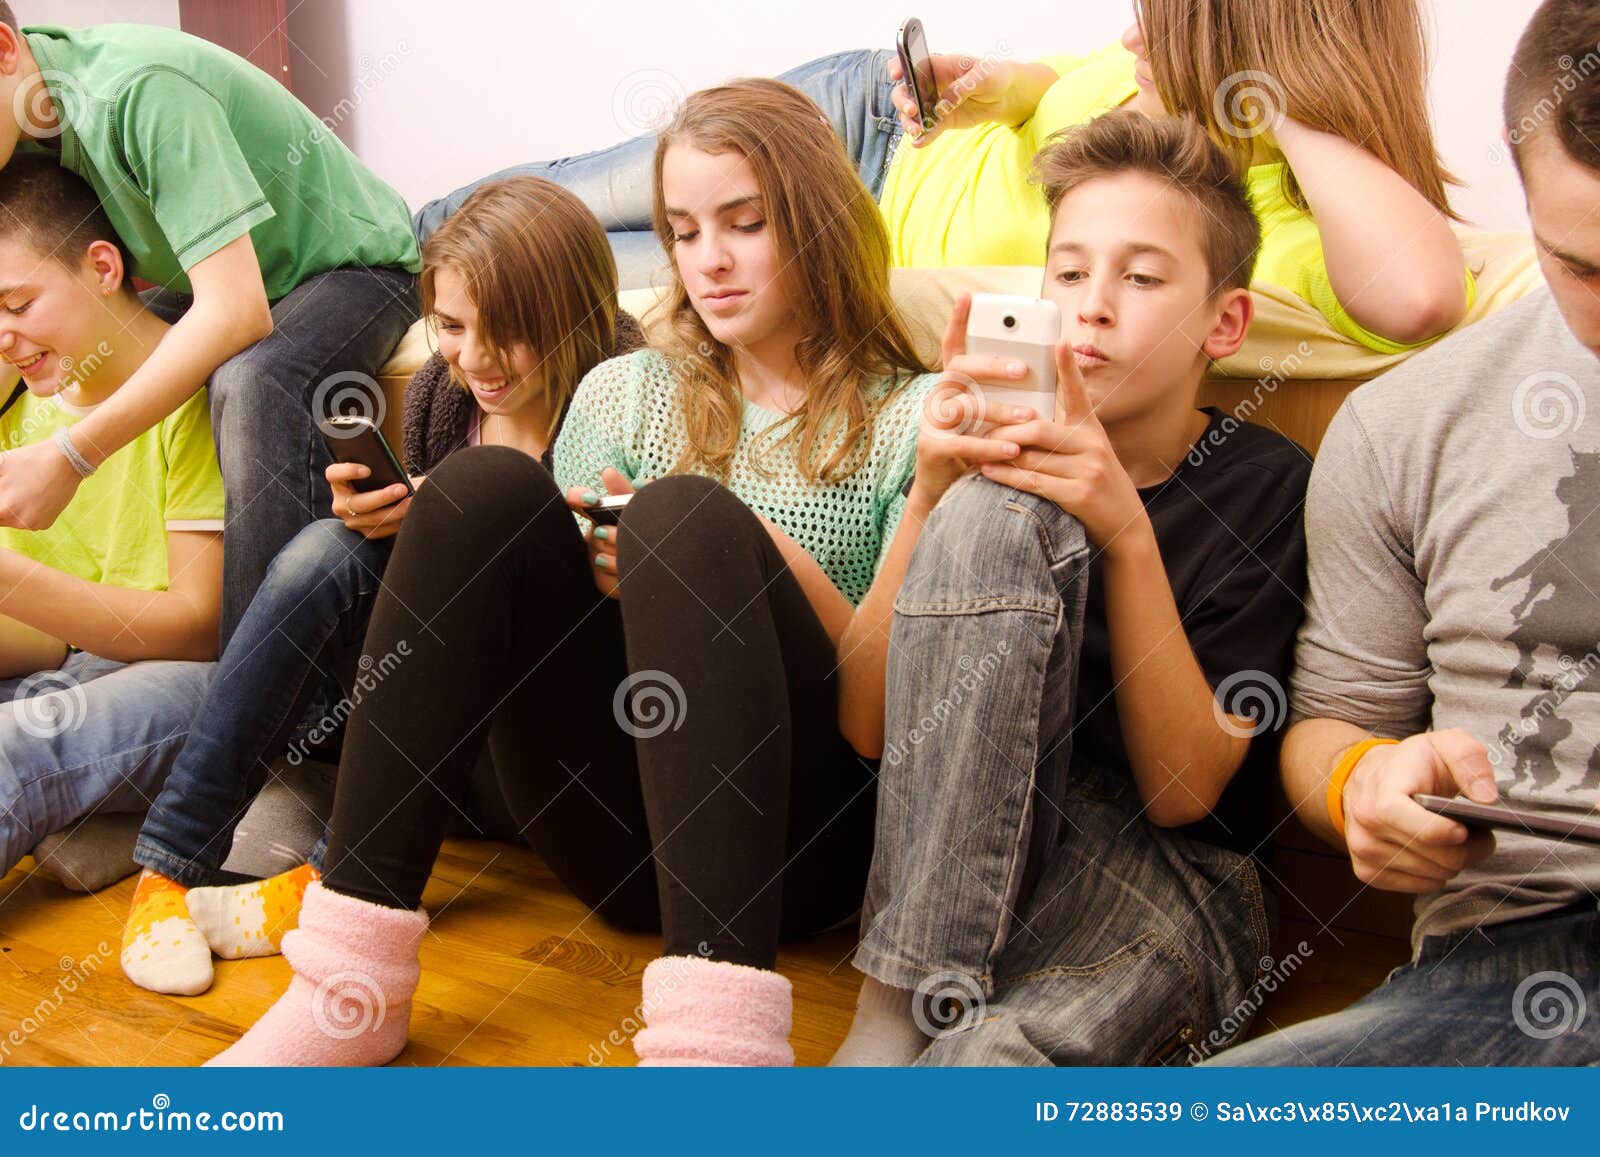 Друзья сидящие в телефоне. Подросток с телефоном. Подросток сидит в телефоне. Студент сидит в телефоне. Человек сидит в телефоне.